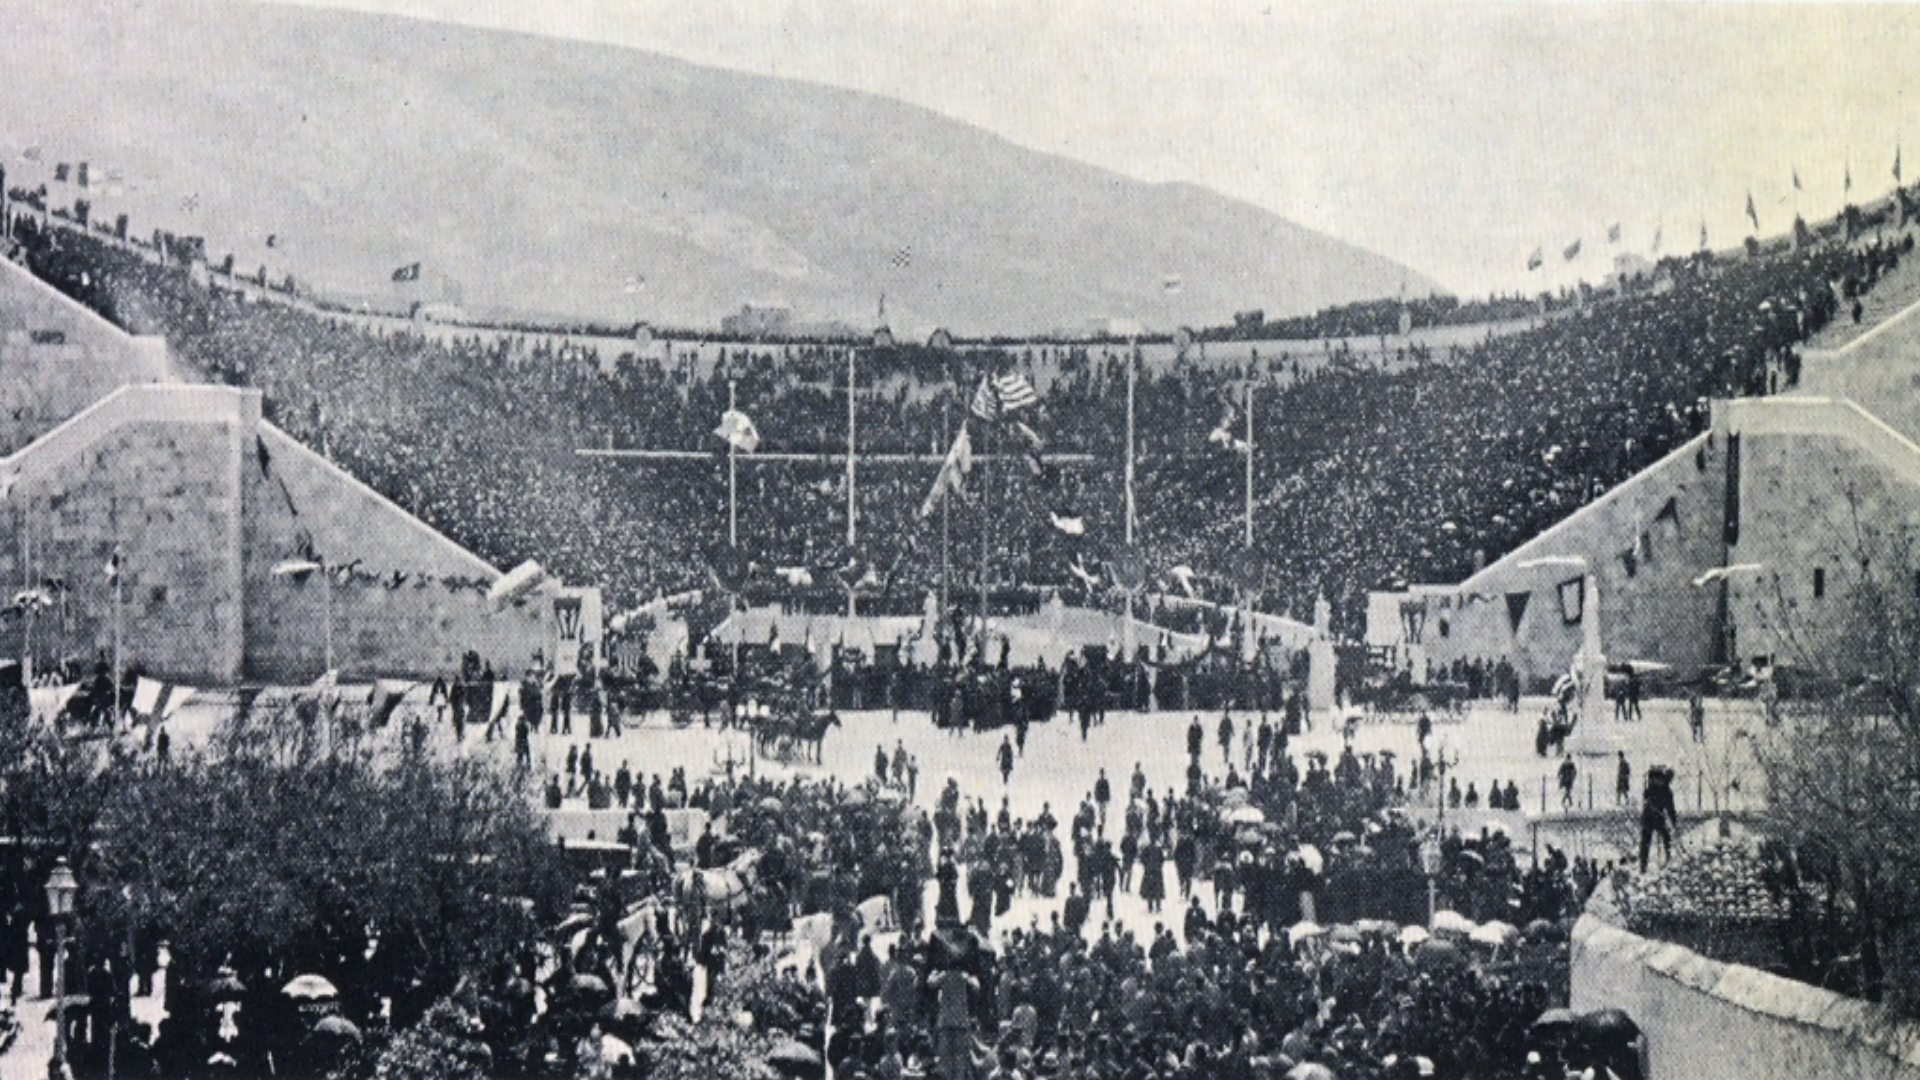 Panathenaic Stadium, 1896 Athens Olympic Games